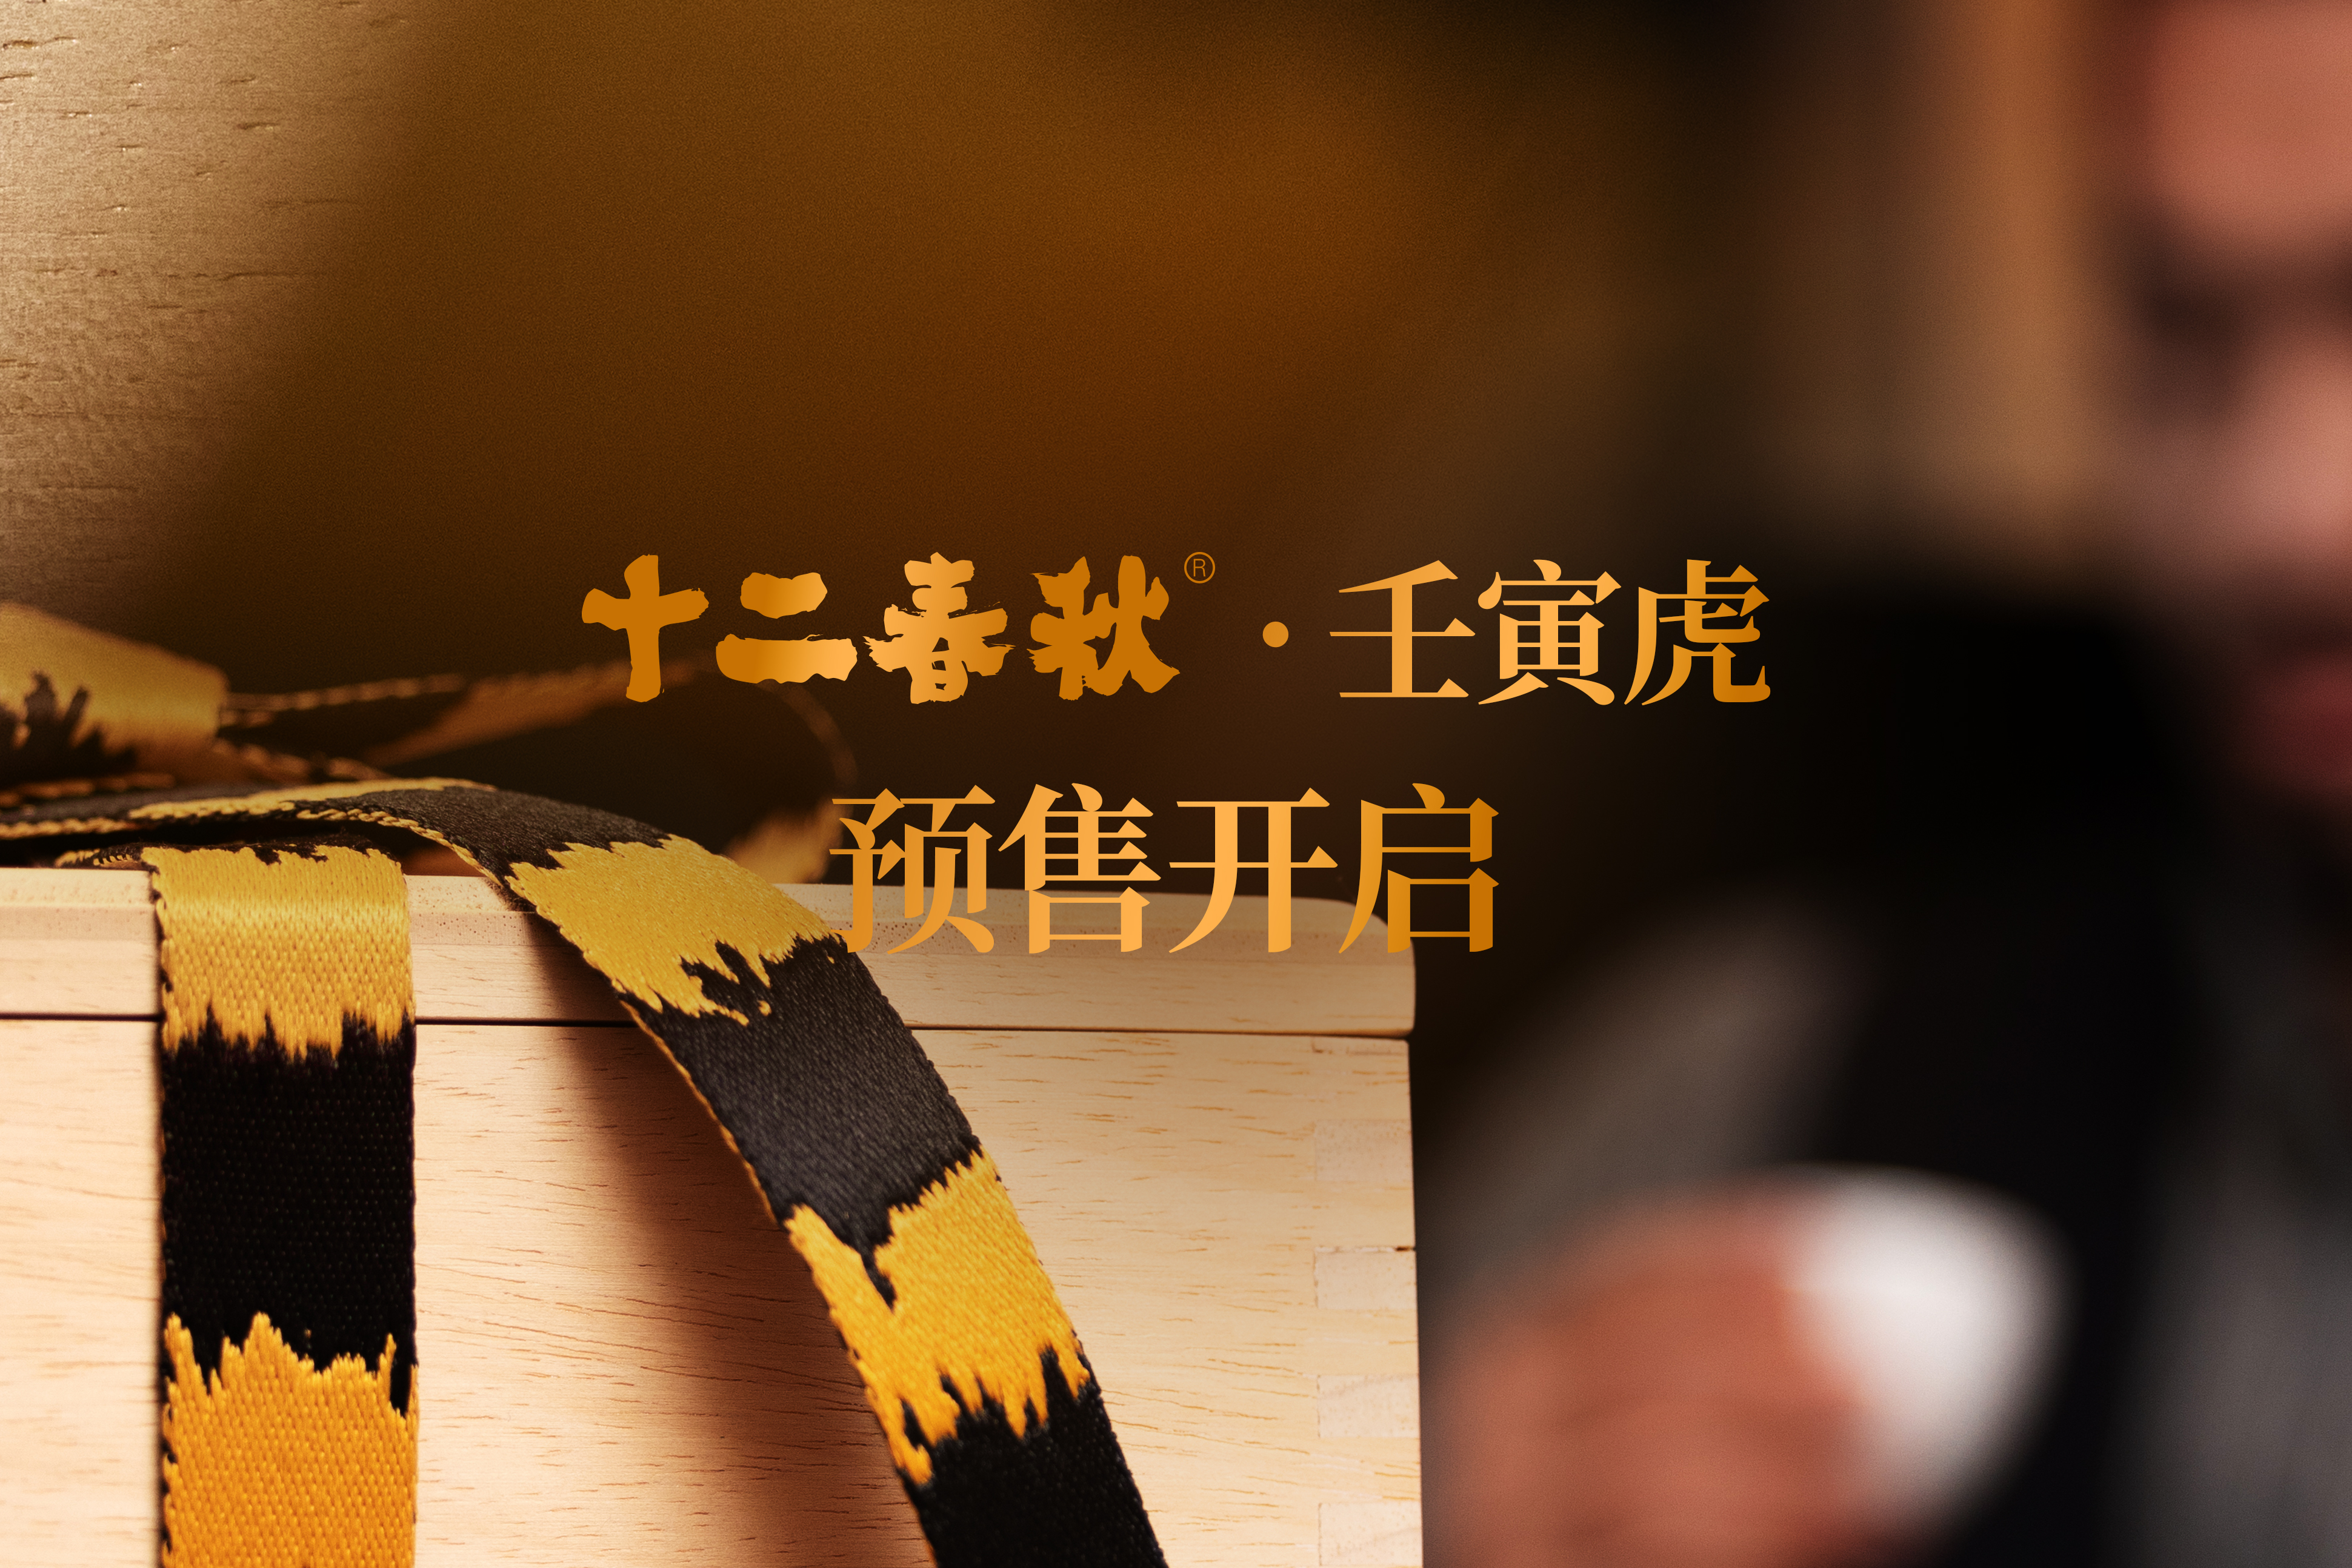 作为中华传统文化的经典符号，生肖于我们的意义非同一般，而用古树普洱茶的生命力去纪念生肖的意义再合适不过。